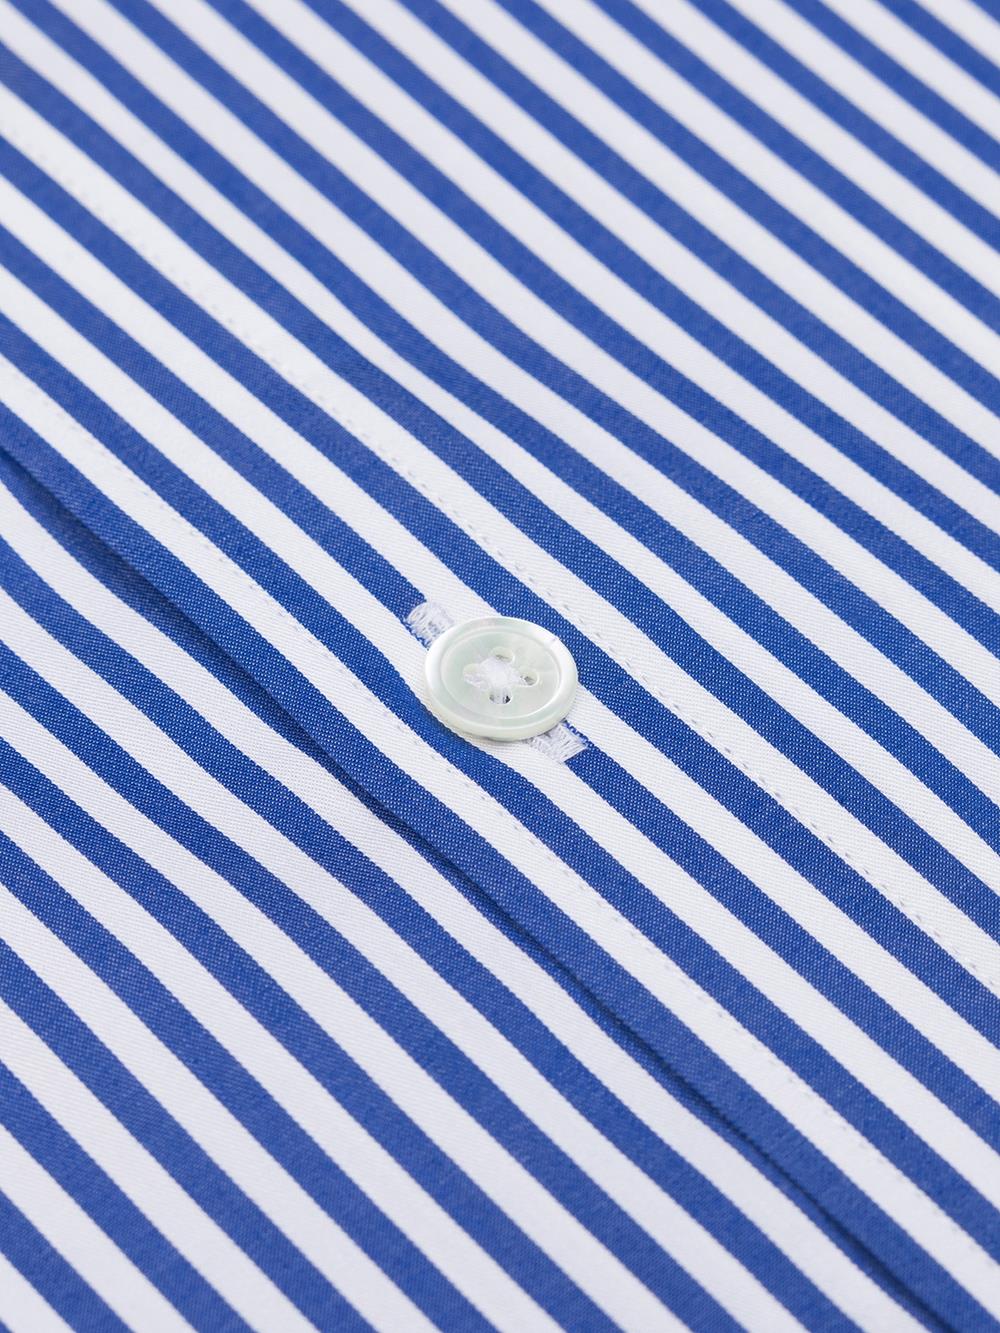 Sully Navy Stripe Shirt